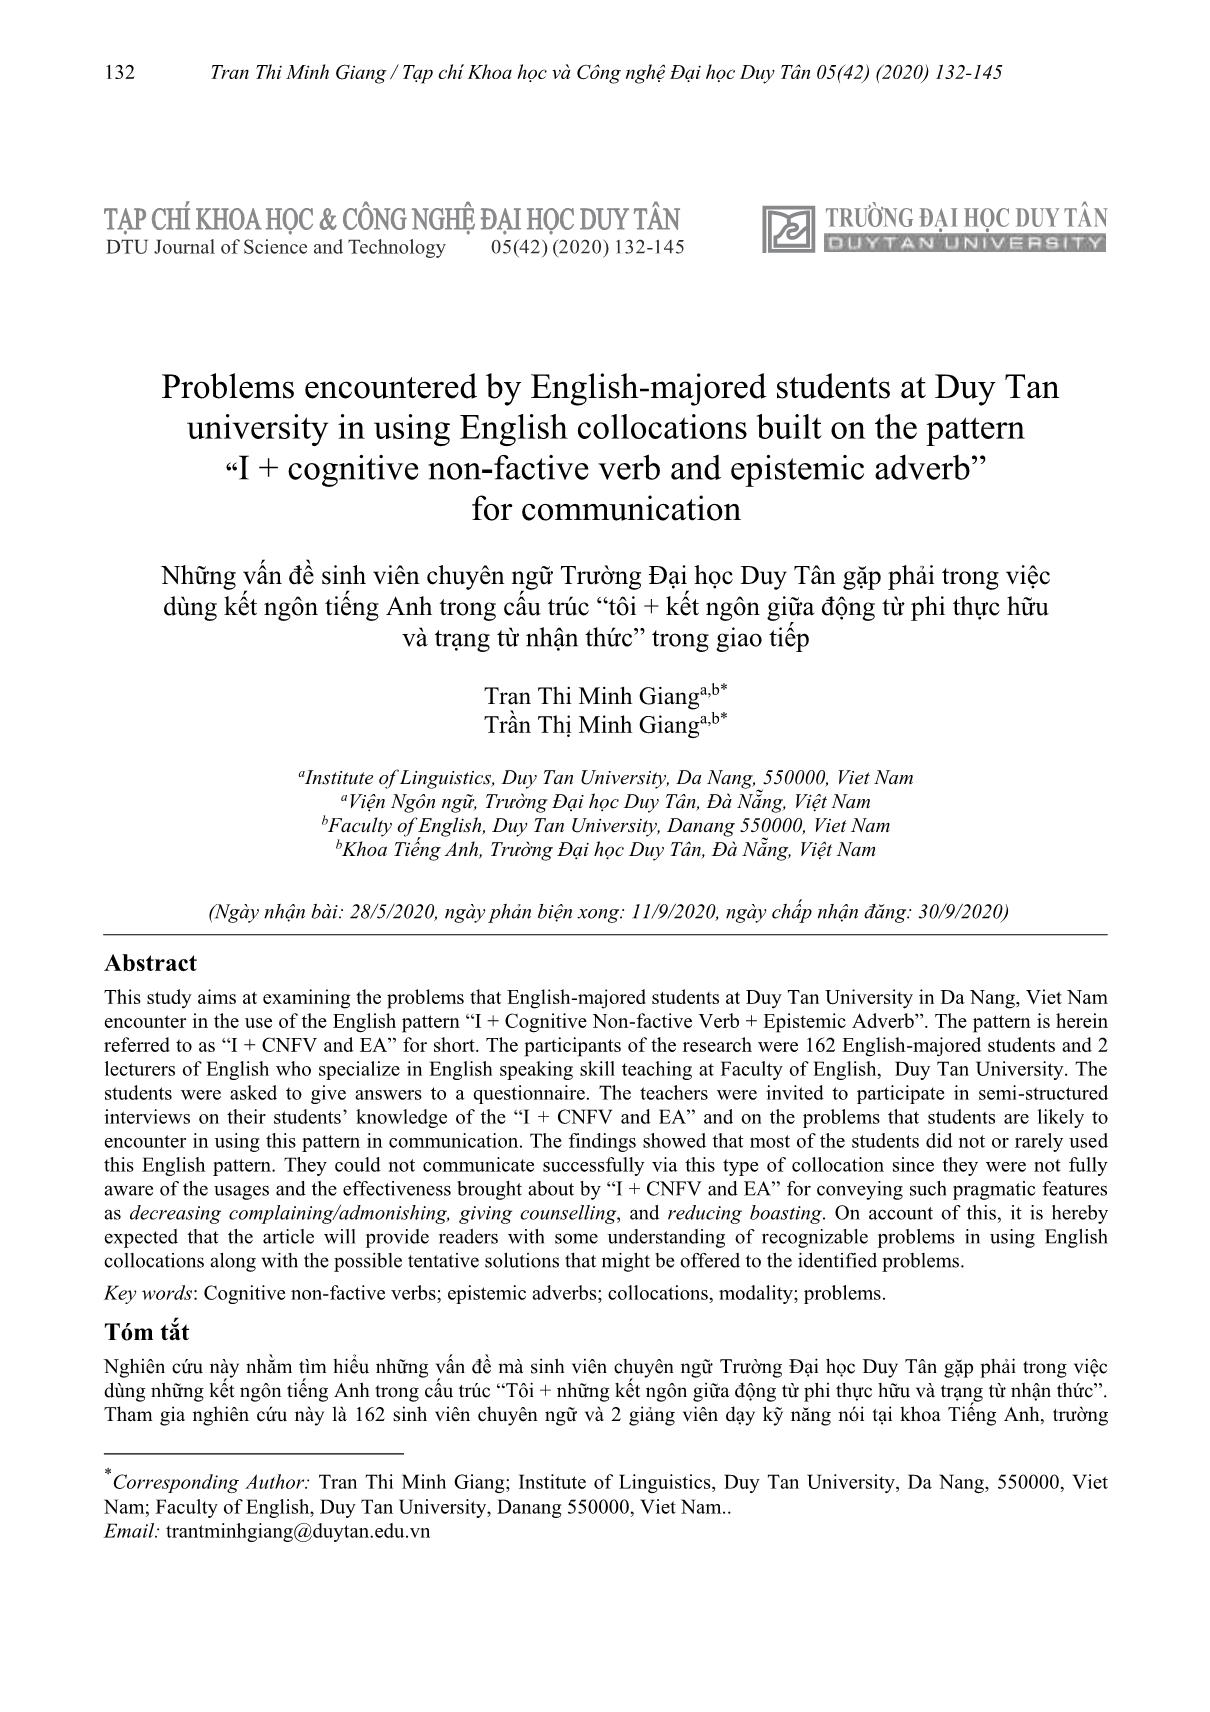 Những vấn đề sinh viên chuyên ngữ Trường Đại học Duy Tân gặp phải trong việc dùng kết ngôn tiếng Anh trong cấu trúc “tôi + kết ngôn giữa động từ phi thực hữu và trạng từ nhận thức” trong giao tiếp trang 1